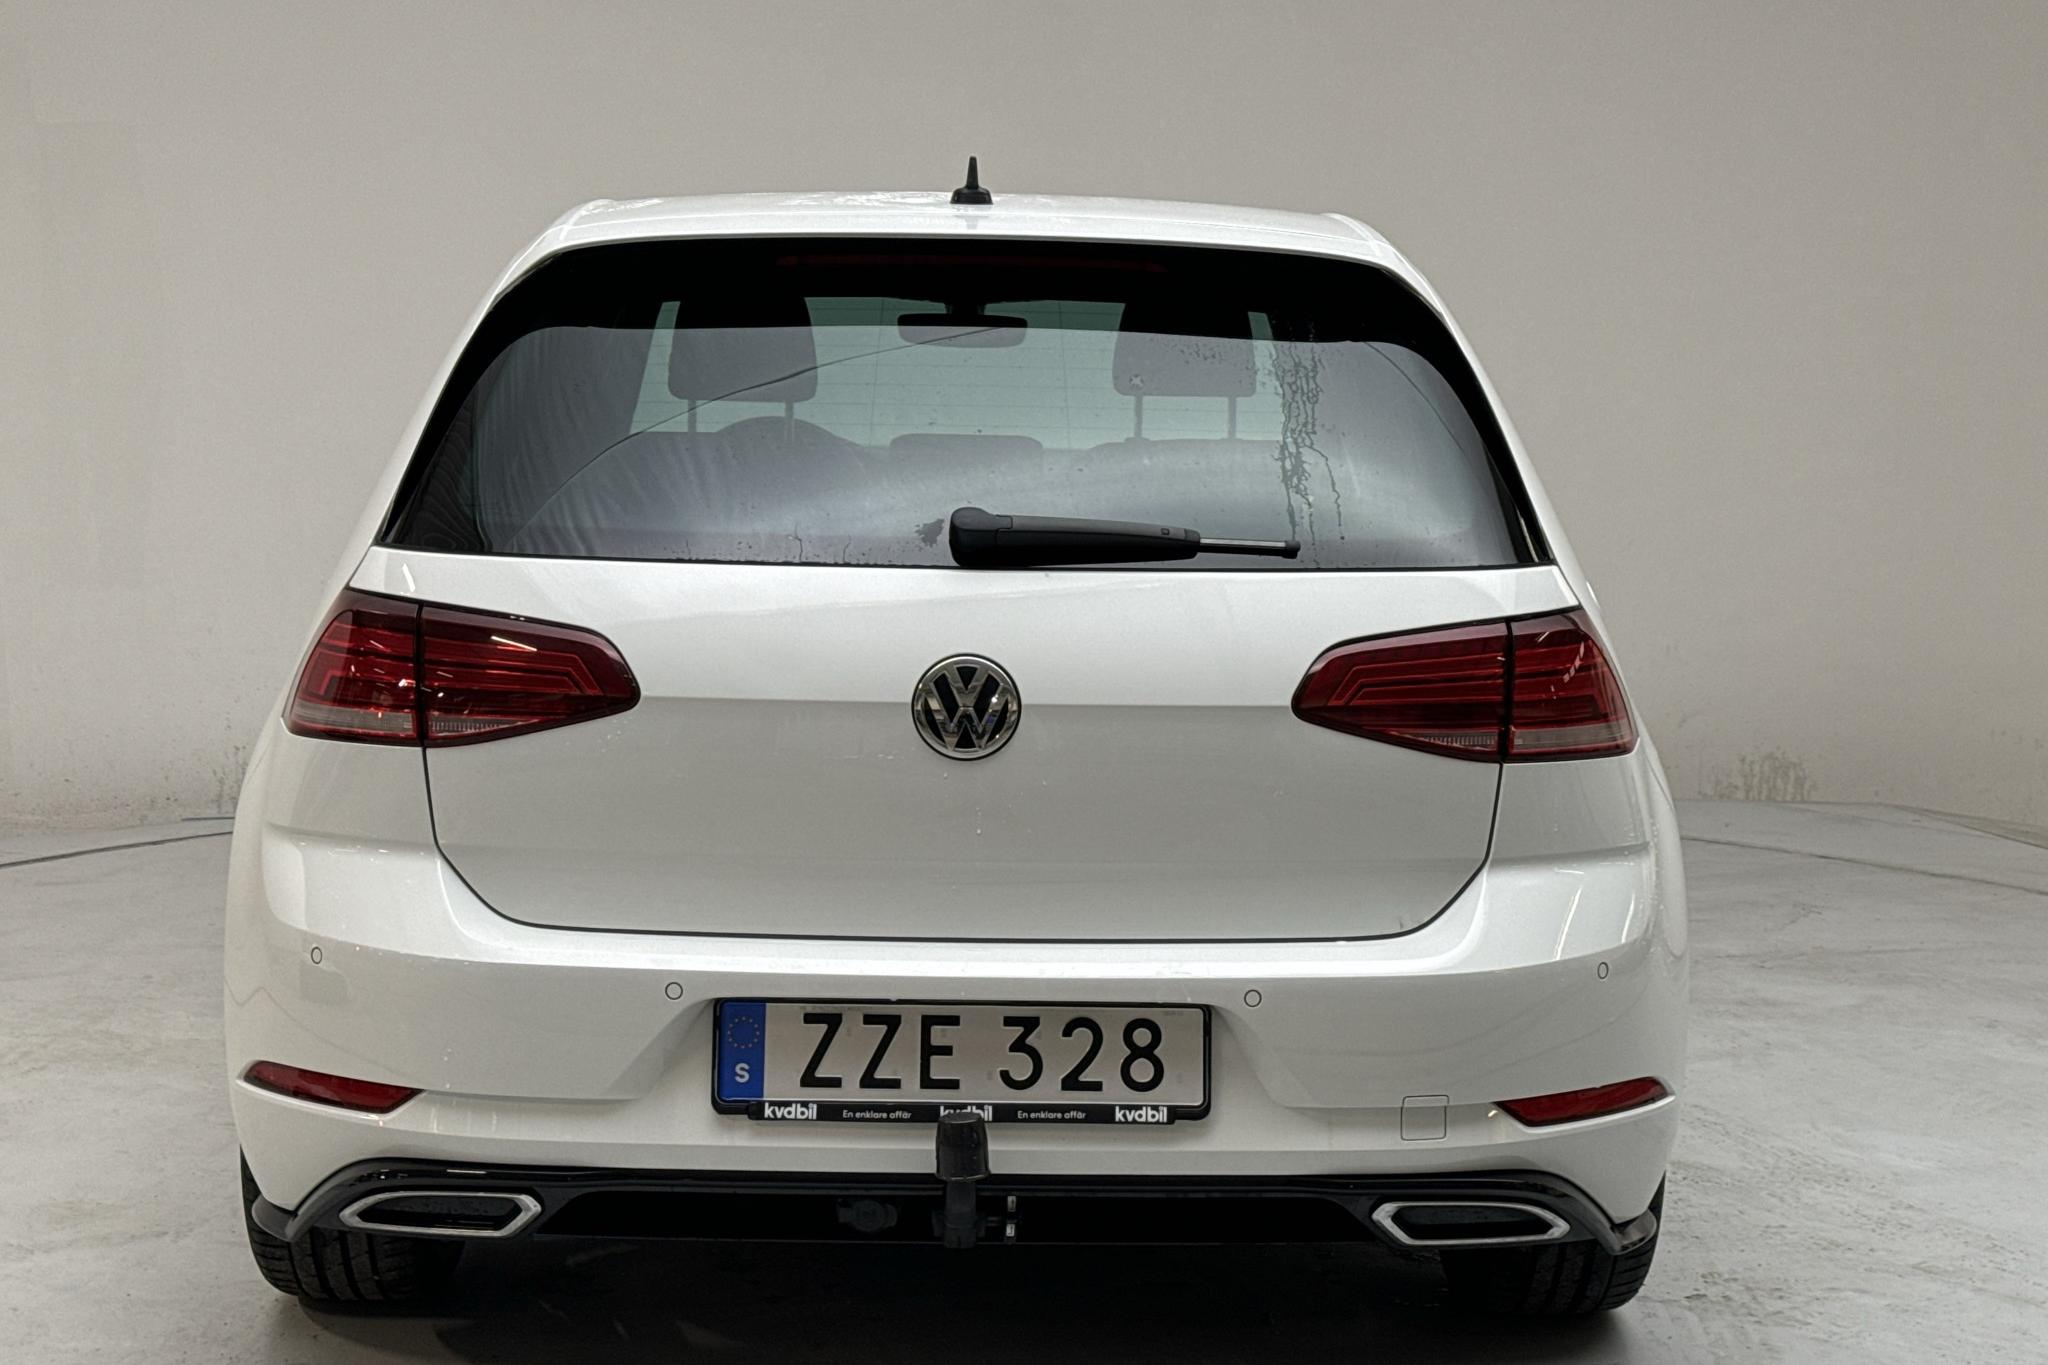 VW Golf VII 1.5 TSI 5dr (150hk) - 45 980 km - Manual - white - 2020